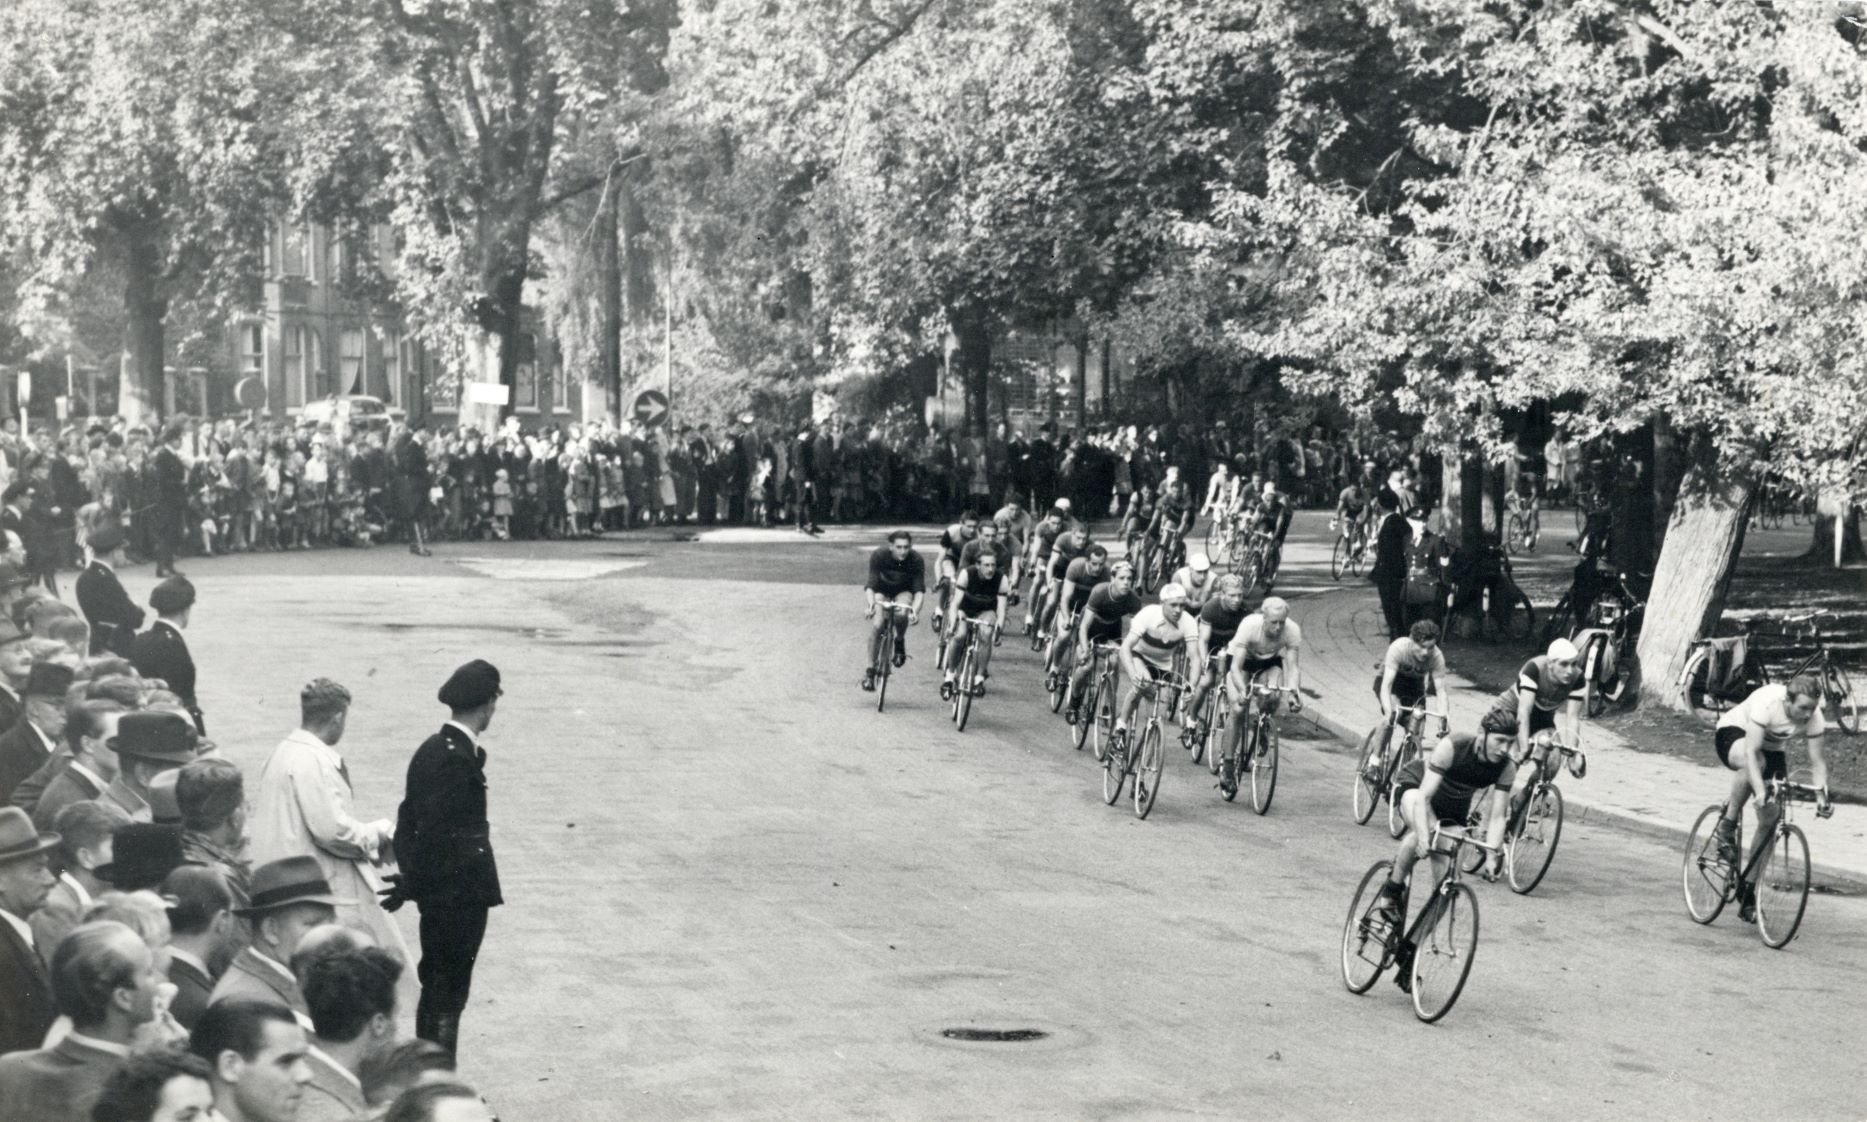 wielerwedstrijd Ronde van Utrecht tijdens doorkomst van de wielrenners door een van de bochten in het Wilhelminapark FF van der Werf 1950 kleiner